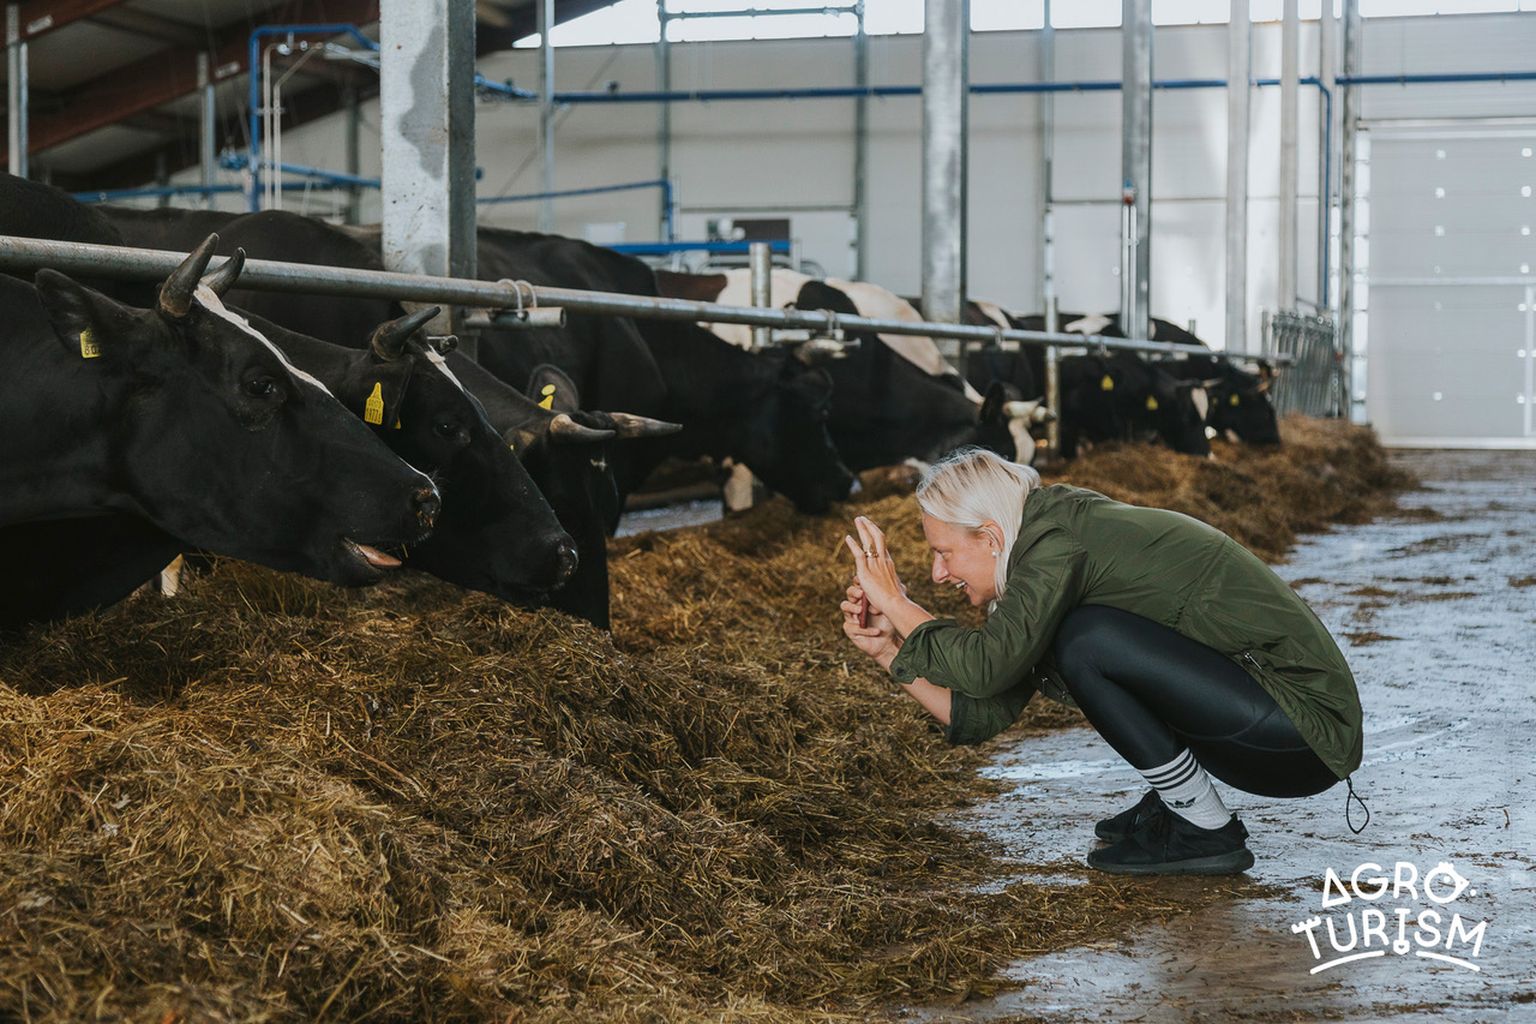 Eestimaa Talupidajate Keskliit on agroturismi teadlikult fookusesse võtnud kui põllumajandusettevõtete tegevuse mitmekesistamise võimalusena juba alates 2018. aastast.